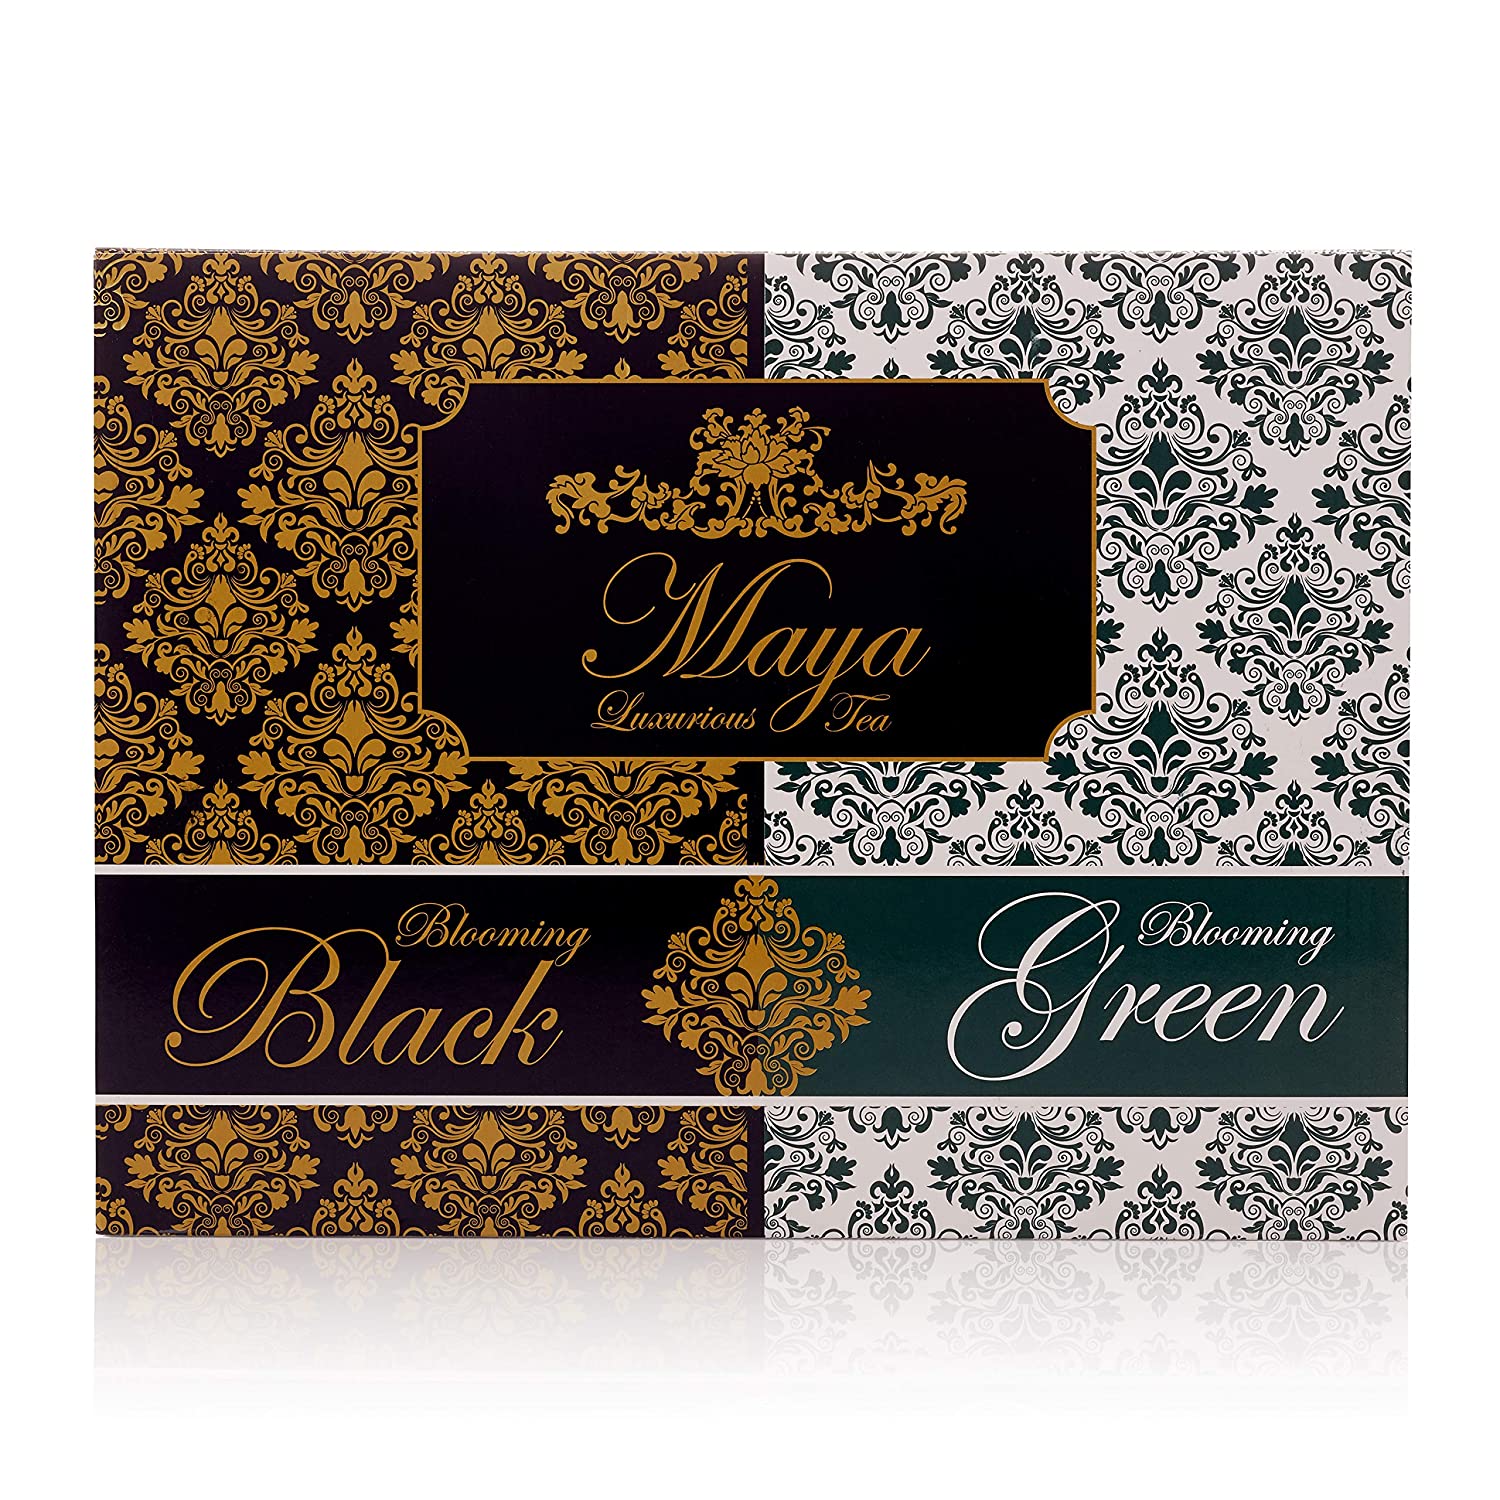 TEA Blooming Black & Green, Pack of 12 by Maya Luxurious